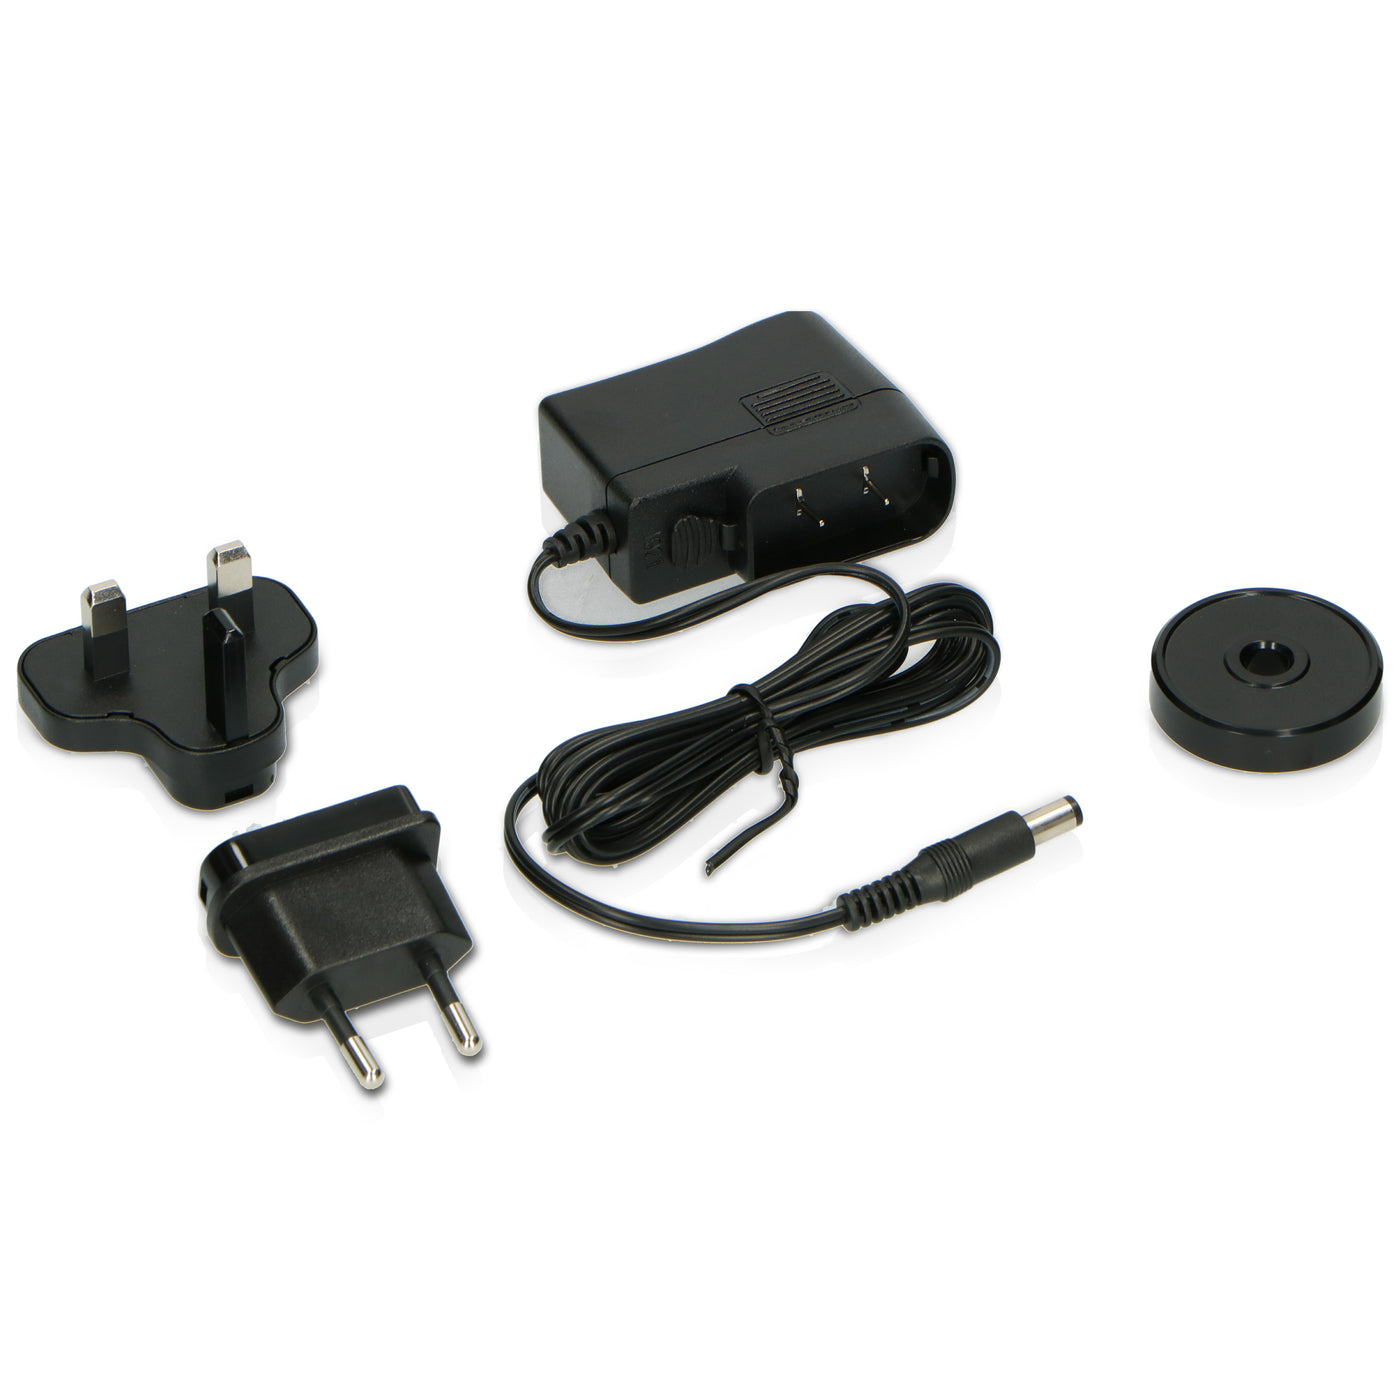 Lenco L-90X - Gramofon z kodowaniem USB/PC - Orzech